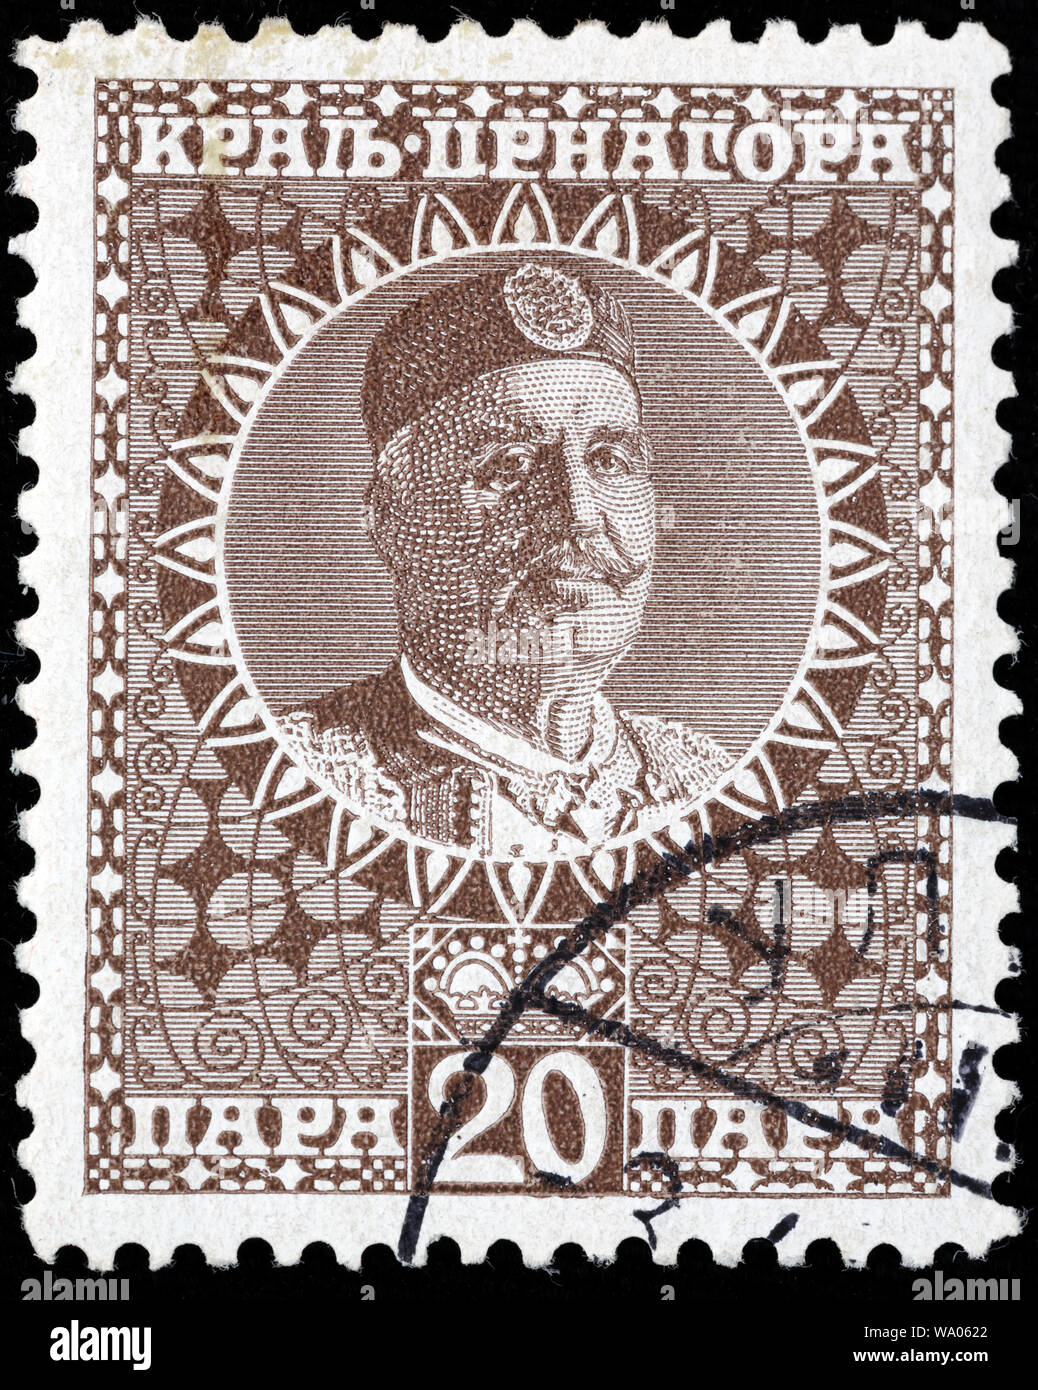 Nicholas I, King of Montenegro (1860-1918), postage stamp, Montenegro, 1913 Stock Photo